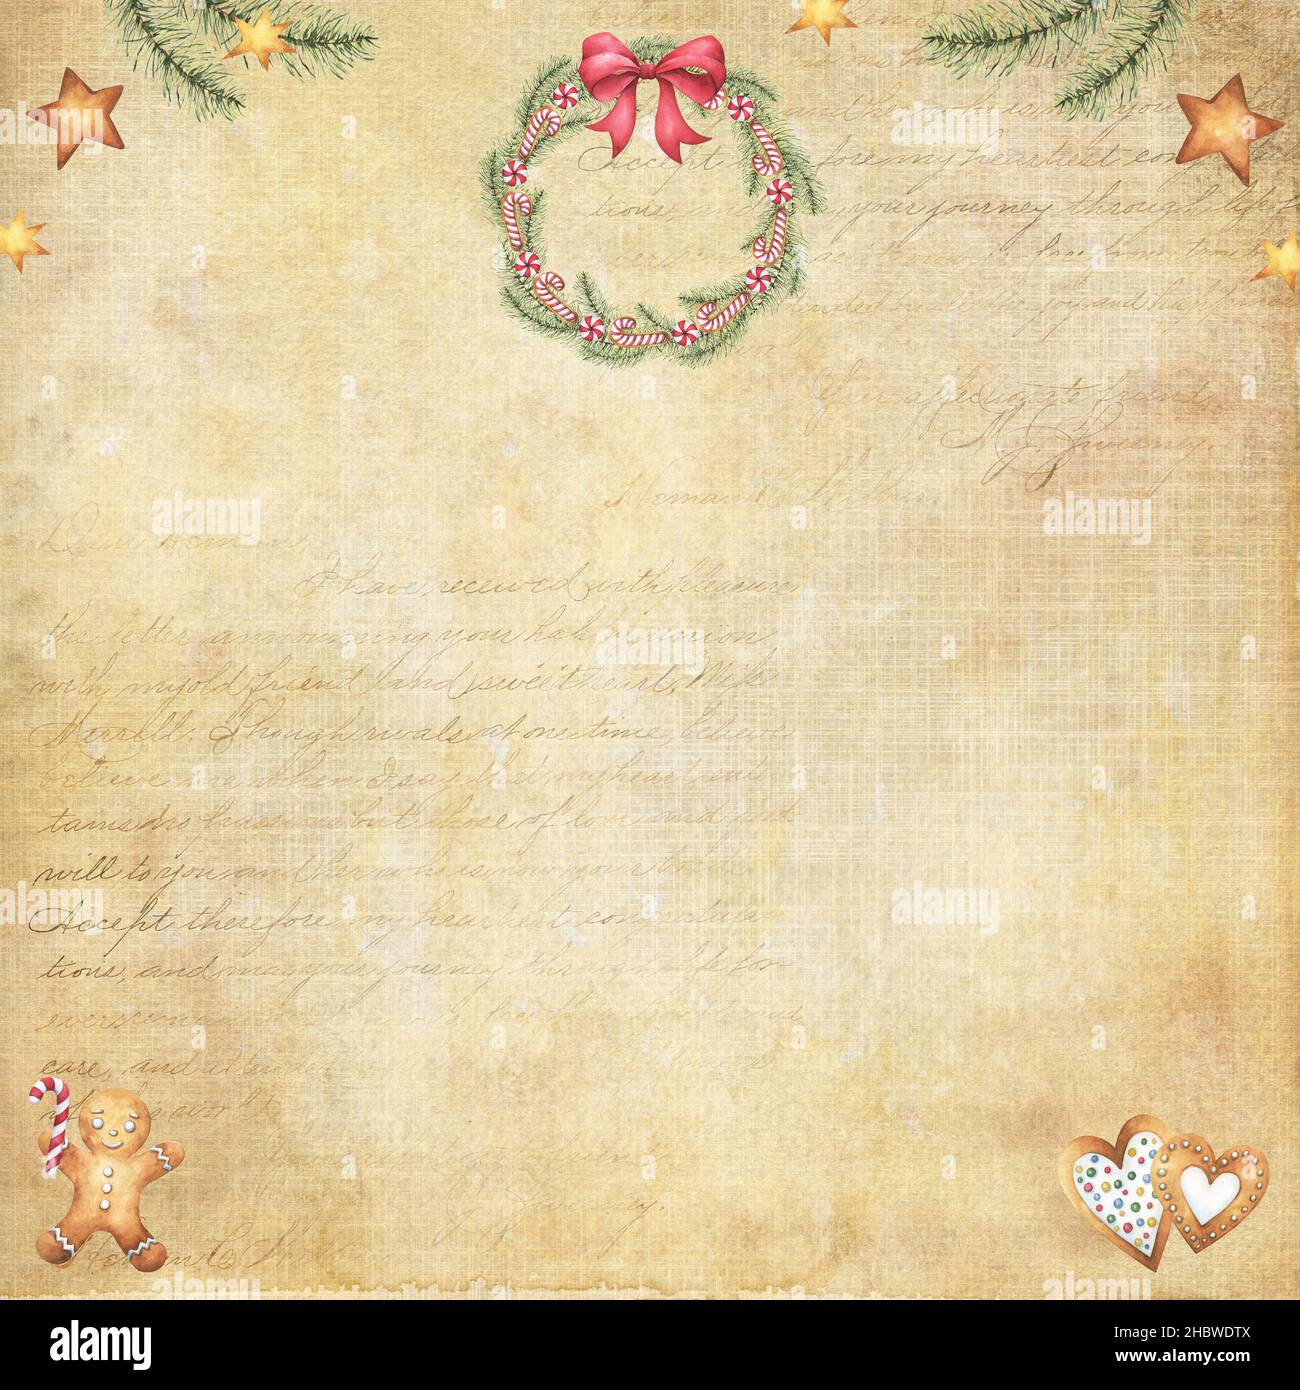 Vintage Weihnachten Digital Scrapbook Papier beige und braun schäbig gebeizt Hintergrund mit zarten Schriftzügen, Aquarell Urlaub Kranz, Lebkuchen Stockfoto